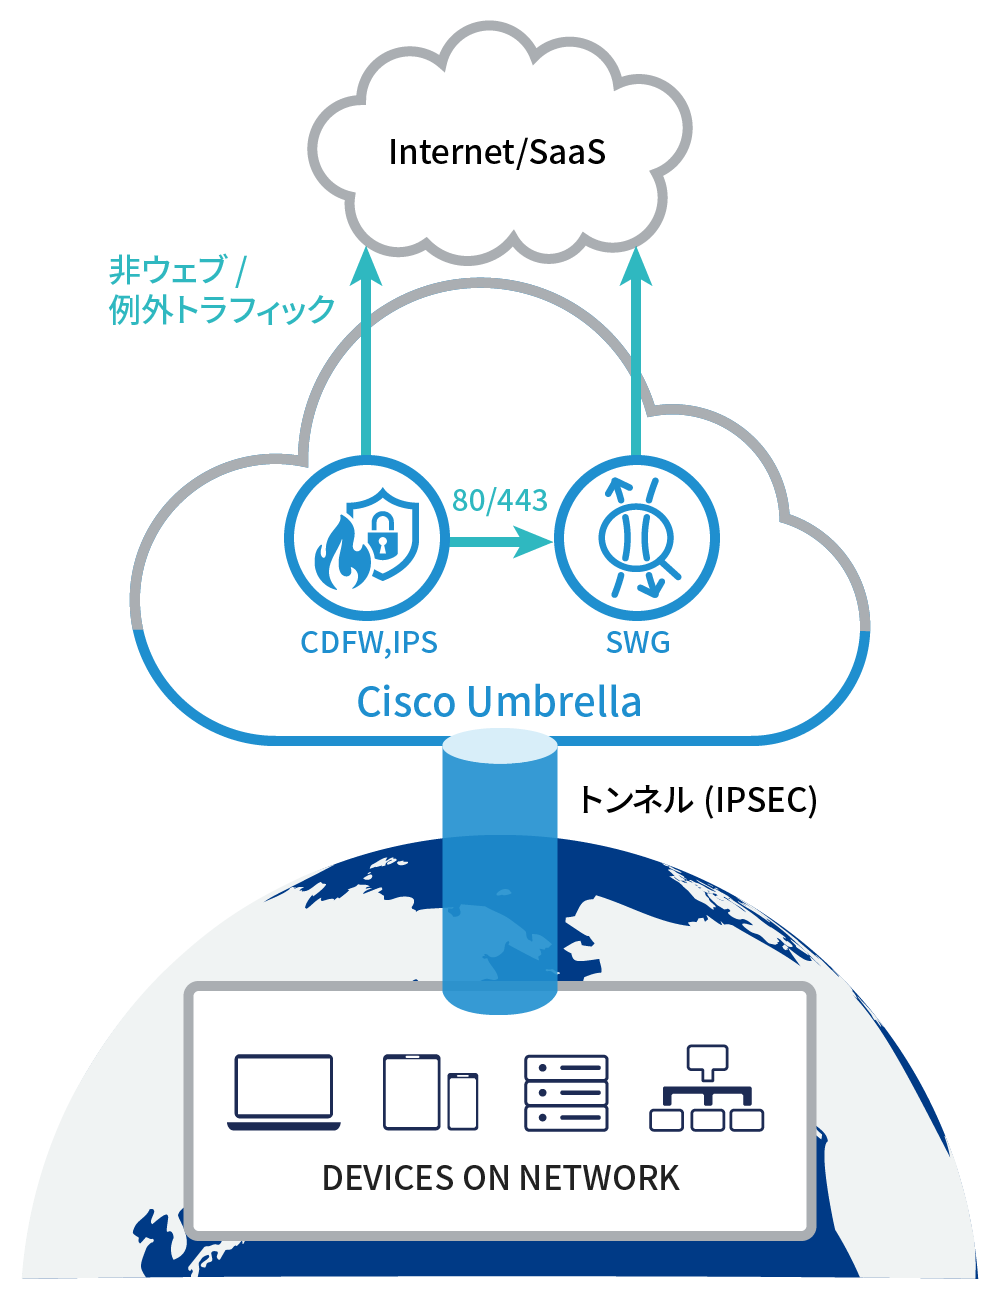 IPsecトンネルを確立し、Cisco Umbrella内のファイアウォールで制御が可能